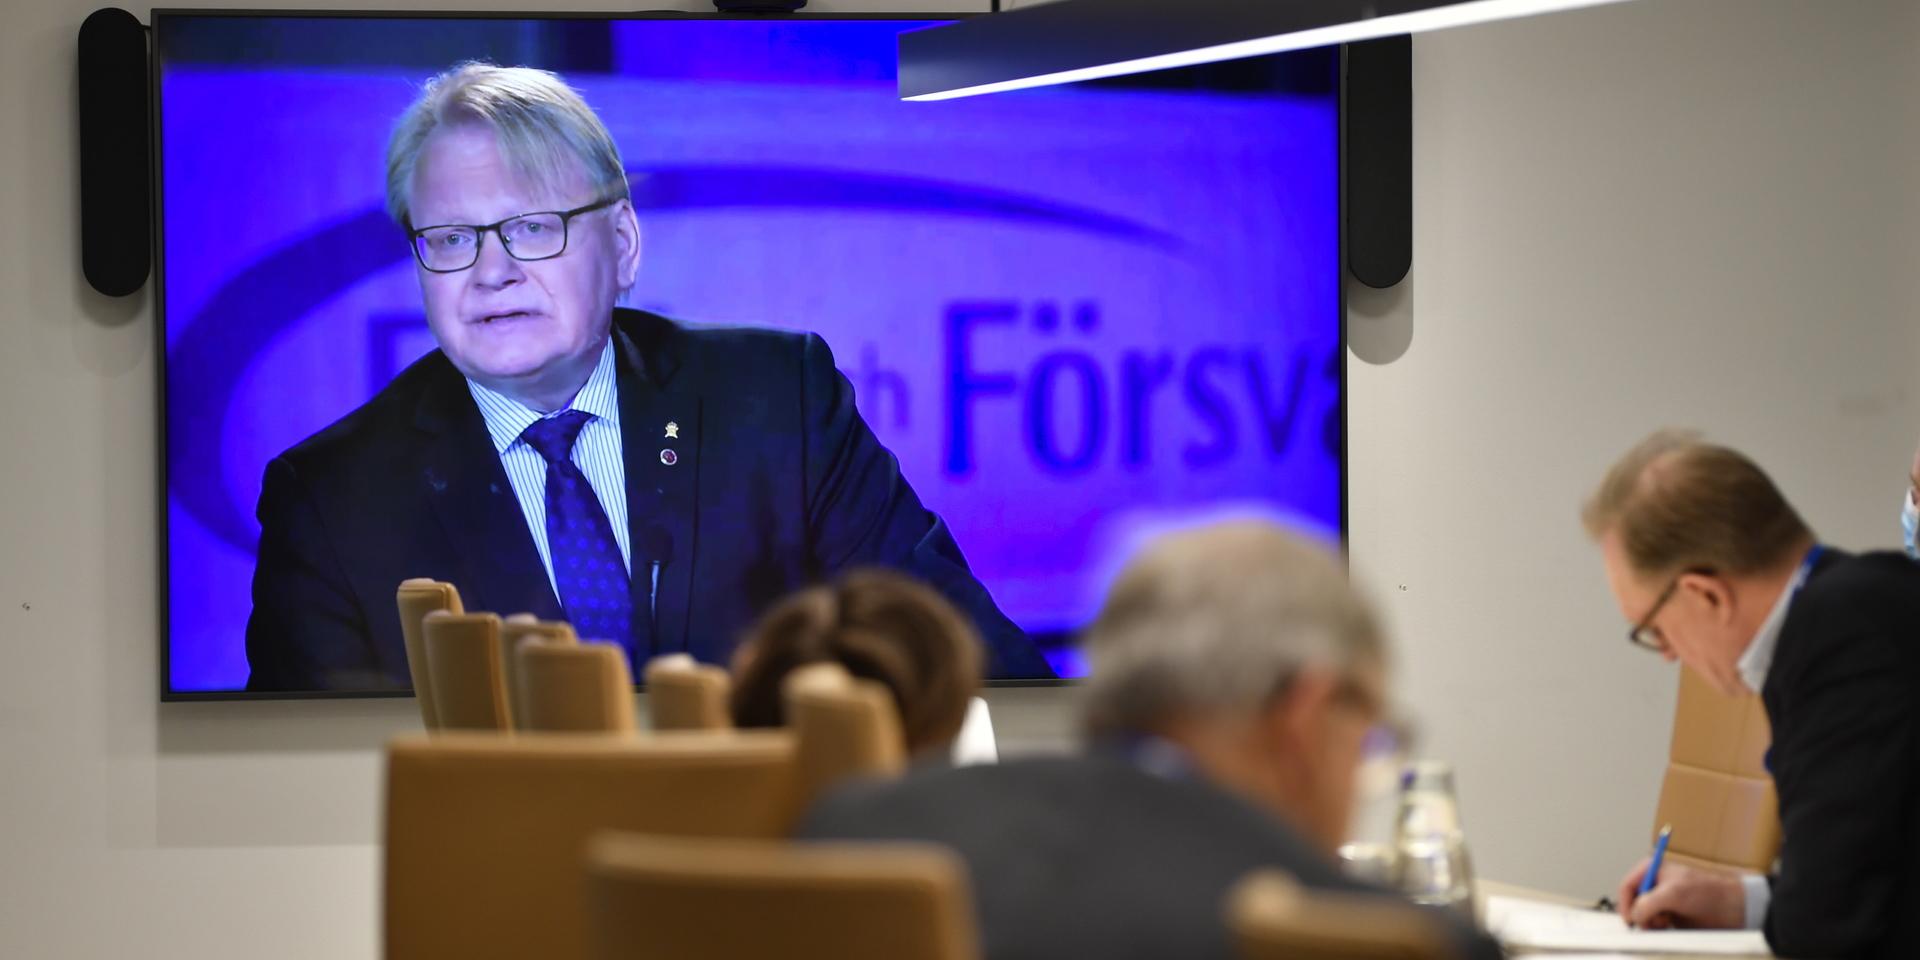 Försvarsminister Peter Hultqvist (S) talade på måndag morgon vid Folk och försvars rikskonferens i Stockholm som i år sker digitalt.